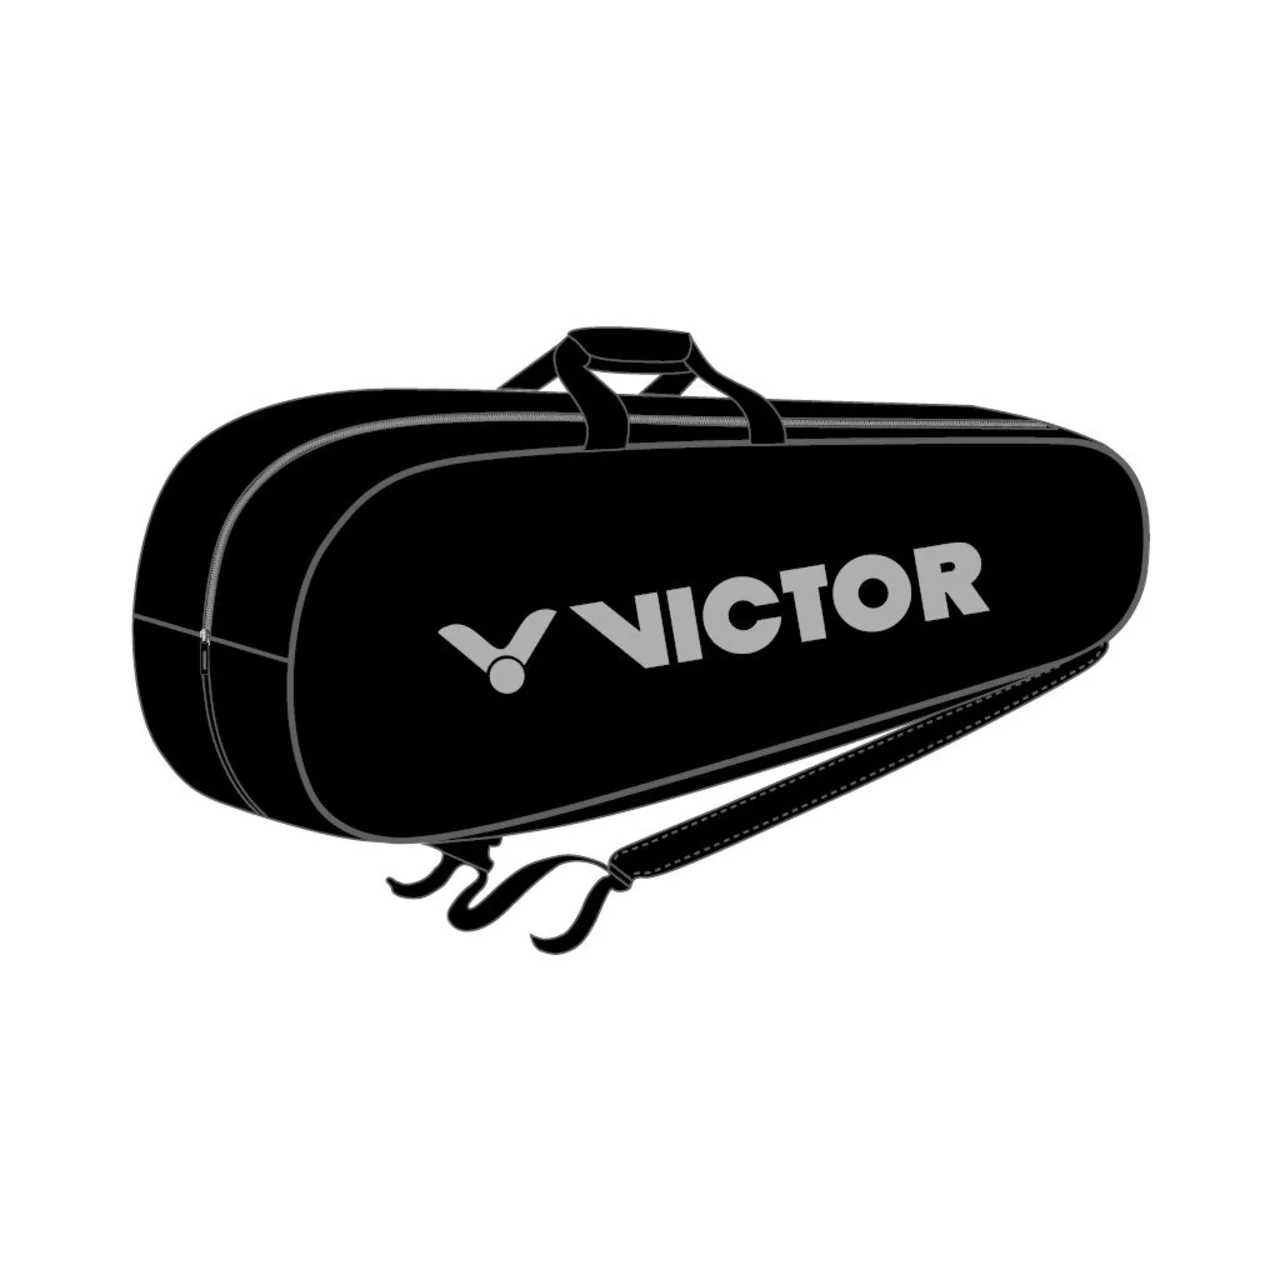 Victor Singlebag Black